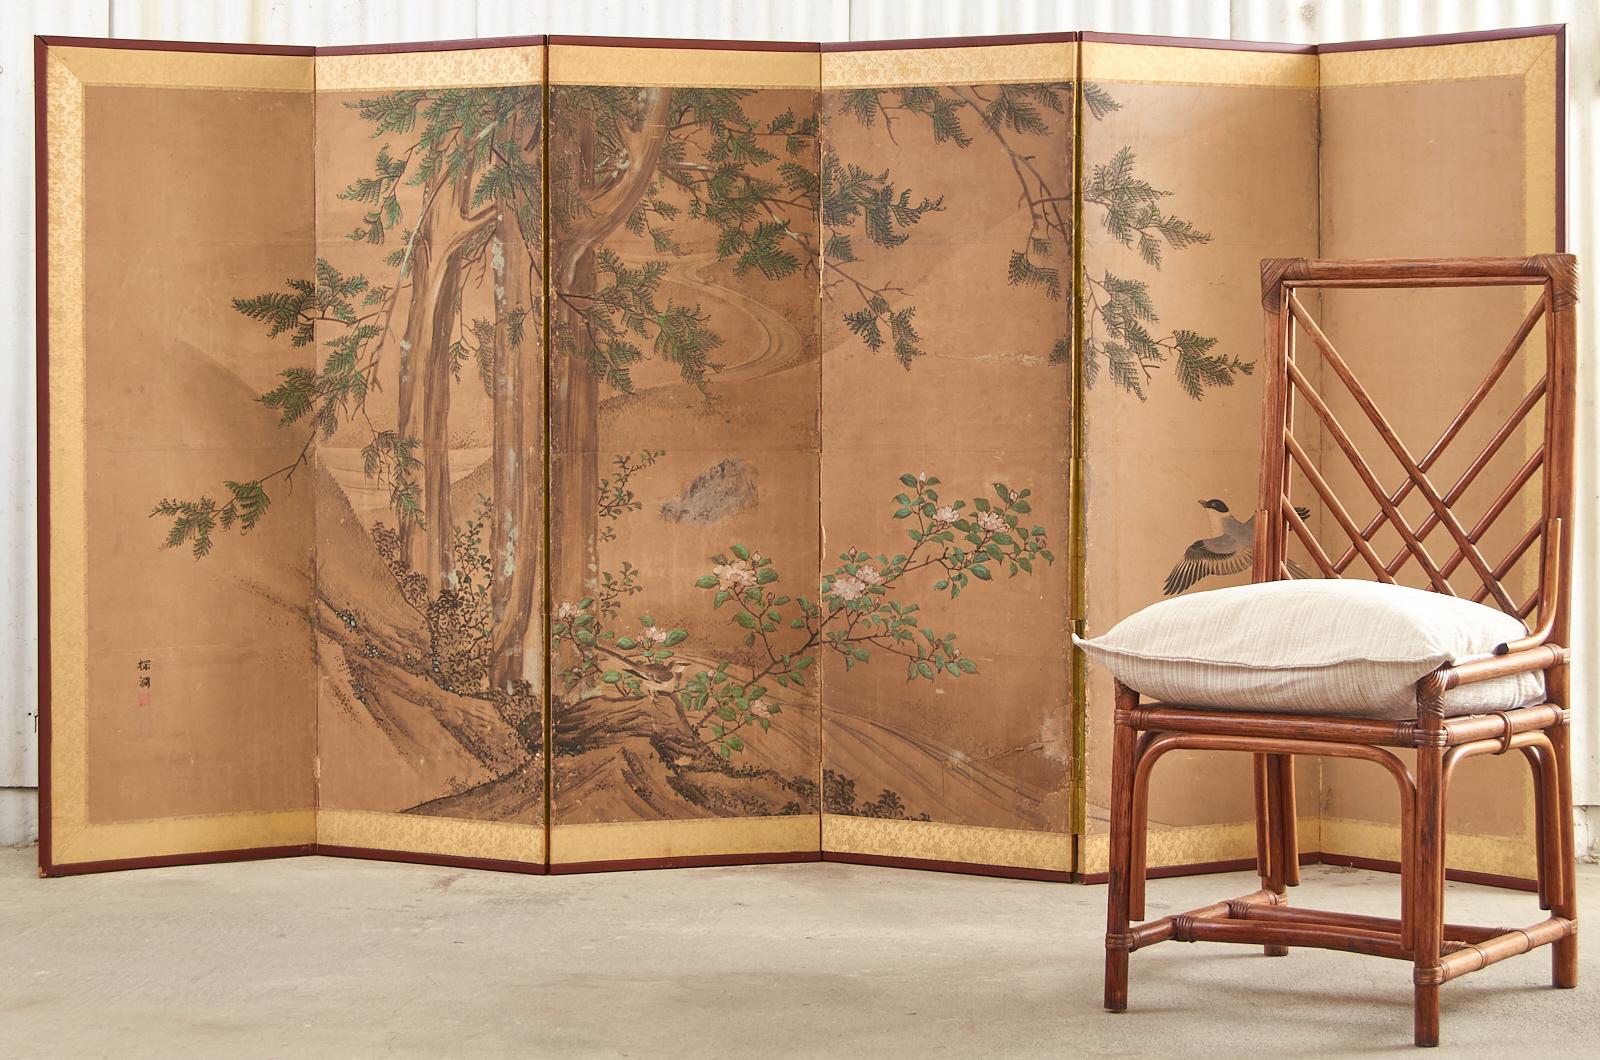 Japanischer Sechs-Panel-Landschaftsschirm aus der späten Edo-Periode des 19. Jahrhunderts mit einer Zypresse über einem blühenden Hibiskus und einem Paar Hototogisu-Vögel. Kano-Schule, gemalt mit Tusche und natürlichen Farbpigmenten auf